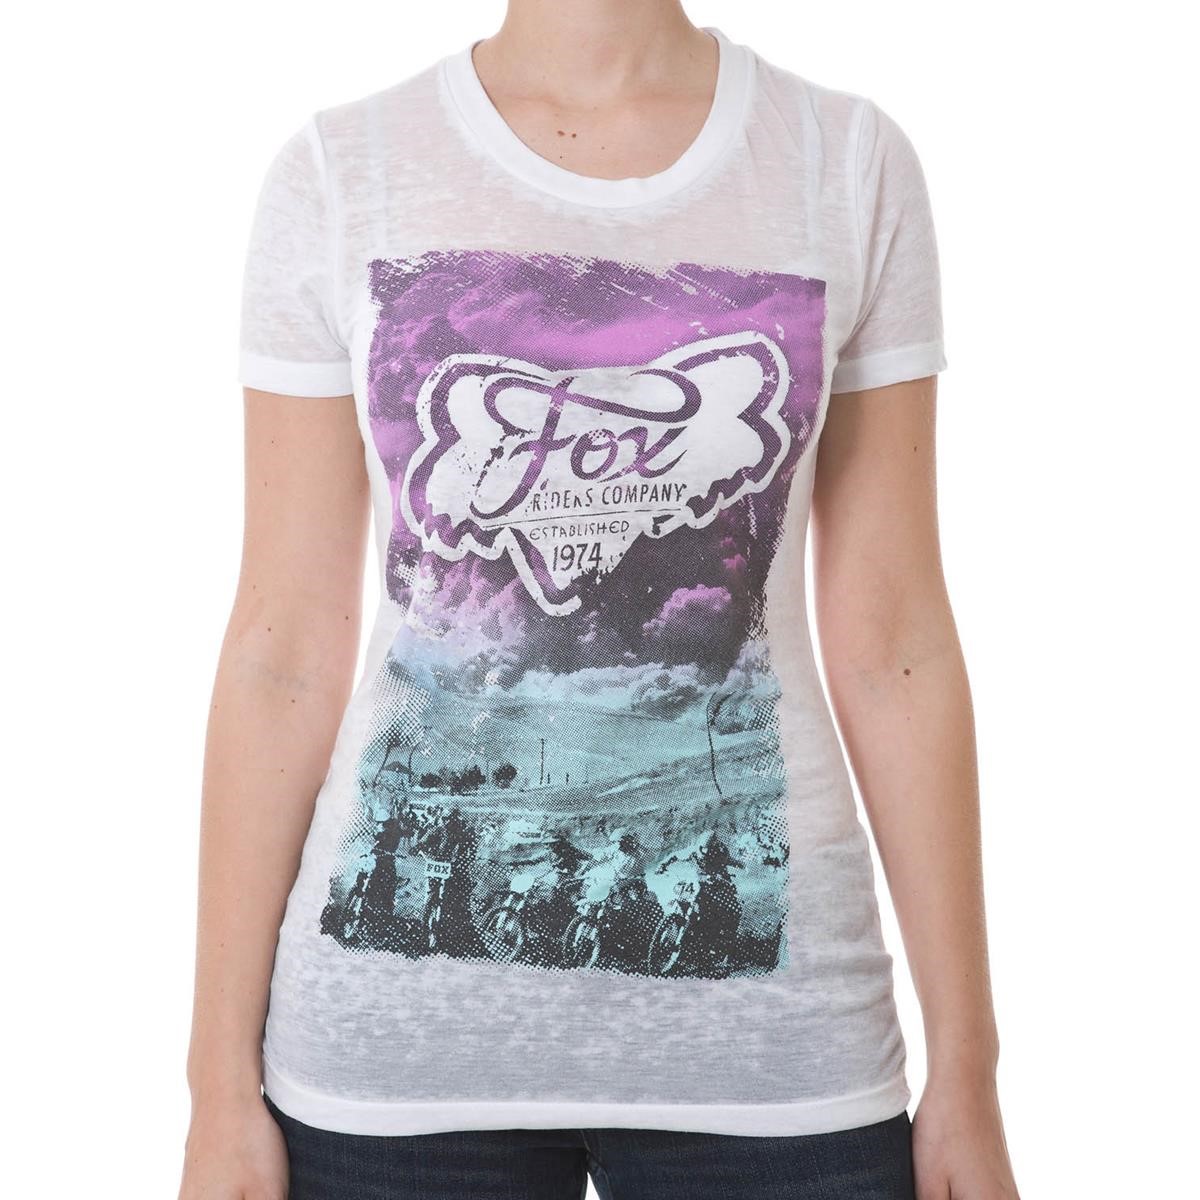 Freizeit/Streetwear Bekleidung-T-Shirts/Polos - Fox Girls Crew Neck T-Shirt Agility White